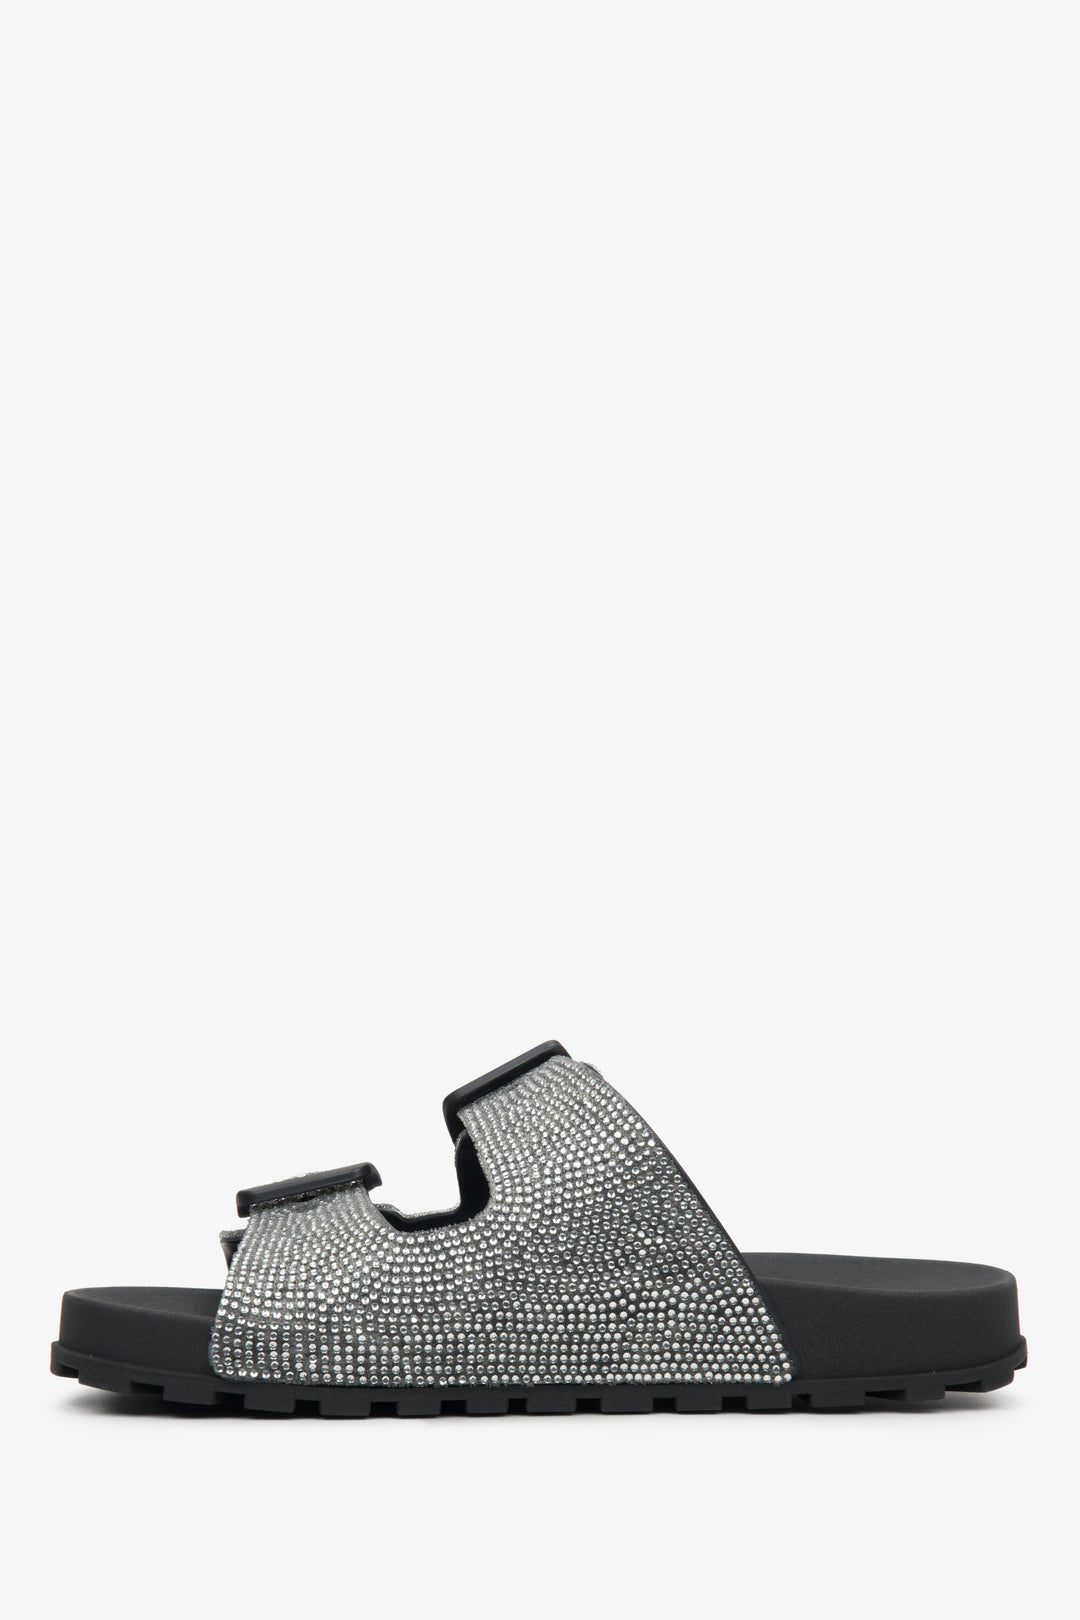 Damskie, gumowe klapki w kolorze czarnym z cyrkoniami Estro - profil buta.